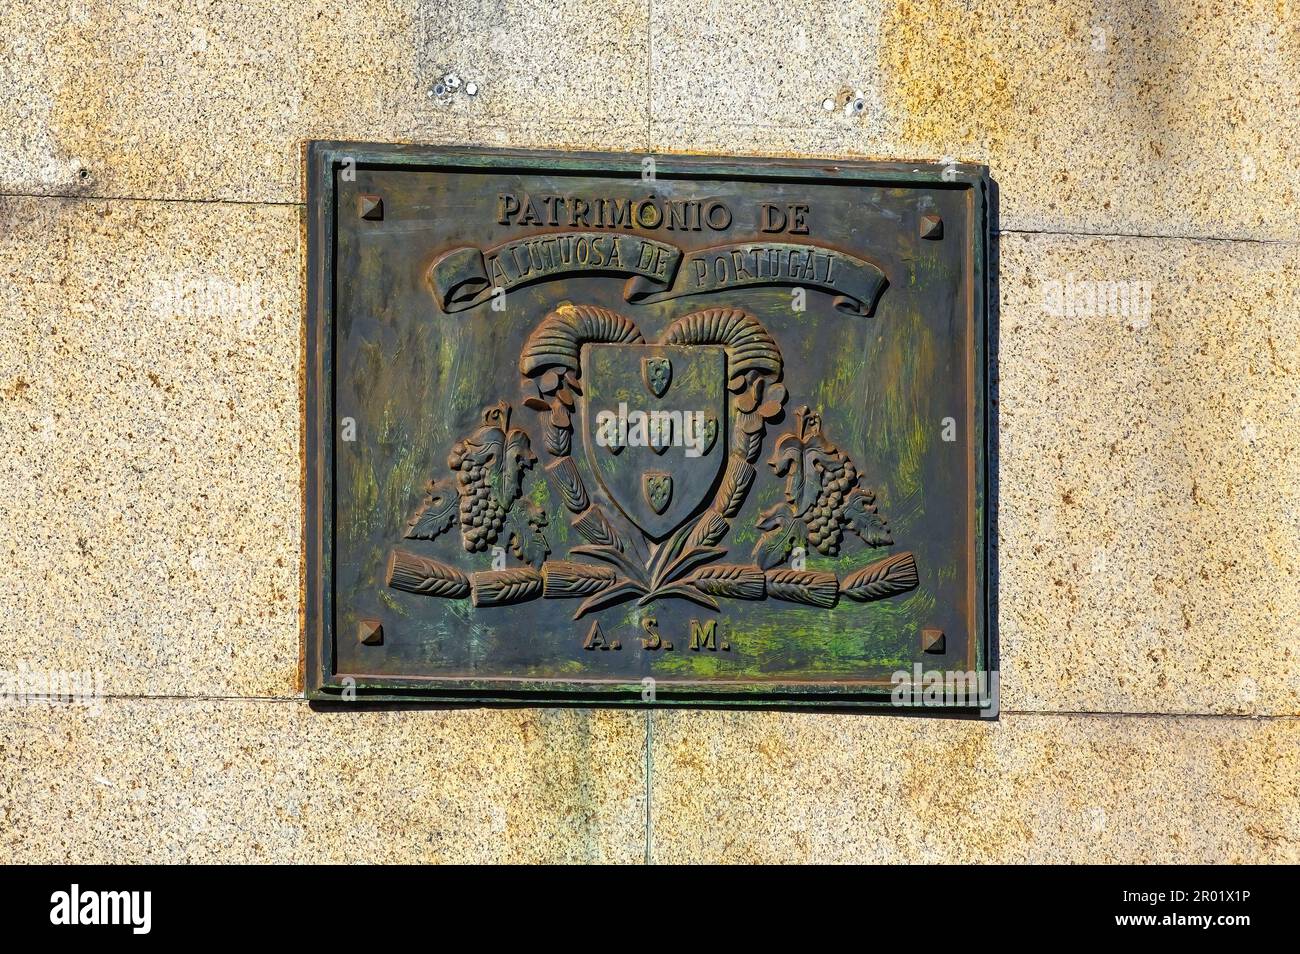 Alte historische Gedenktafel mit einem Wappen und dem Text „Patrimony“ oder Heritage. Stockfoto